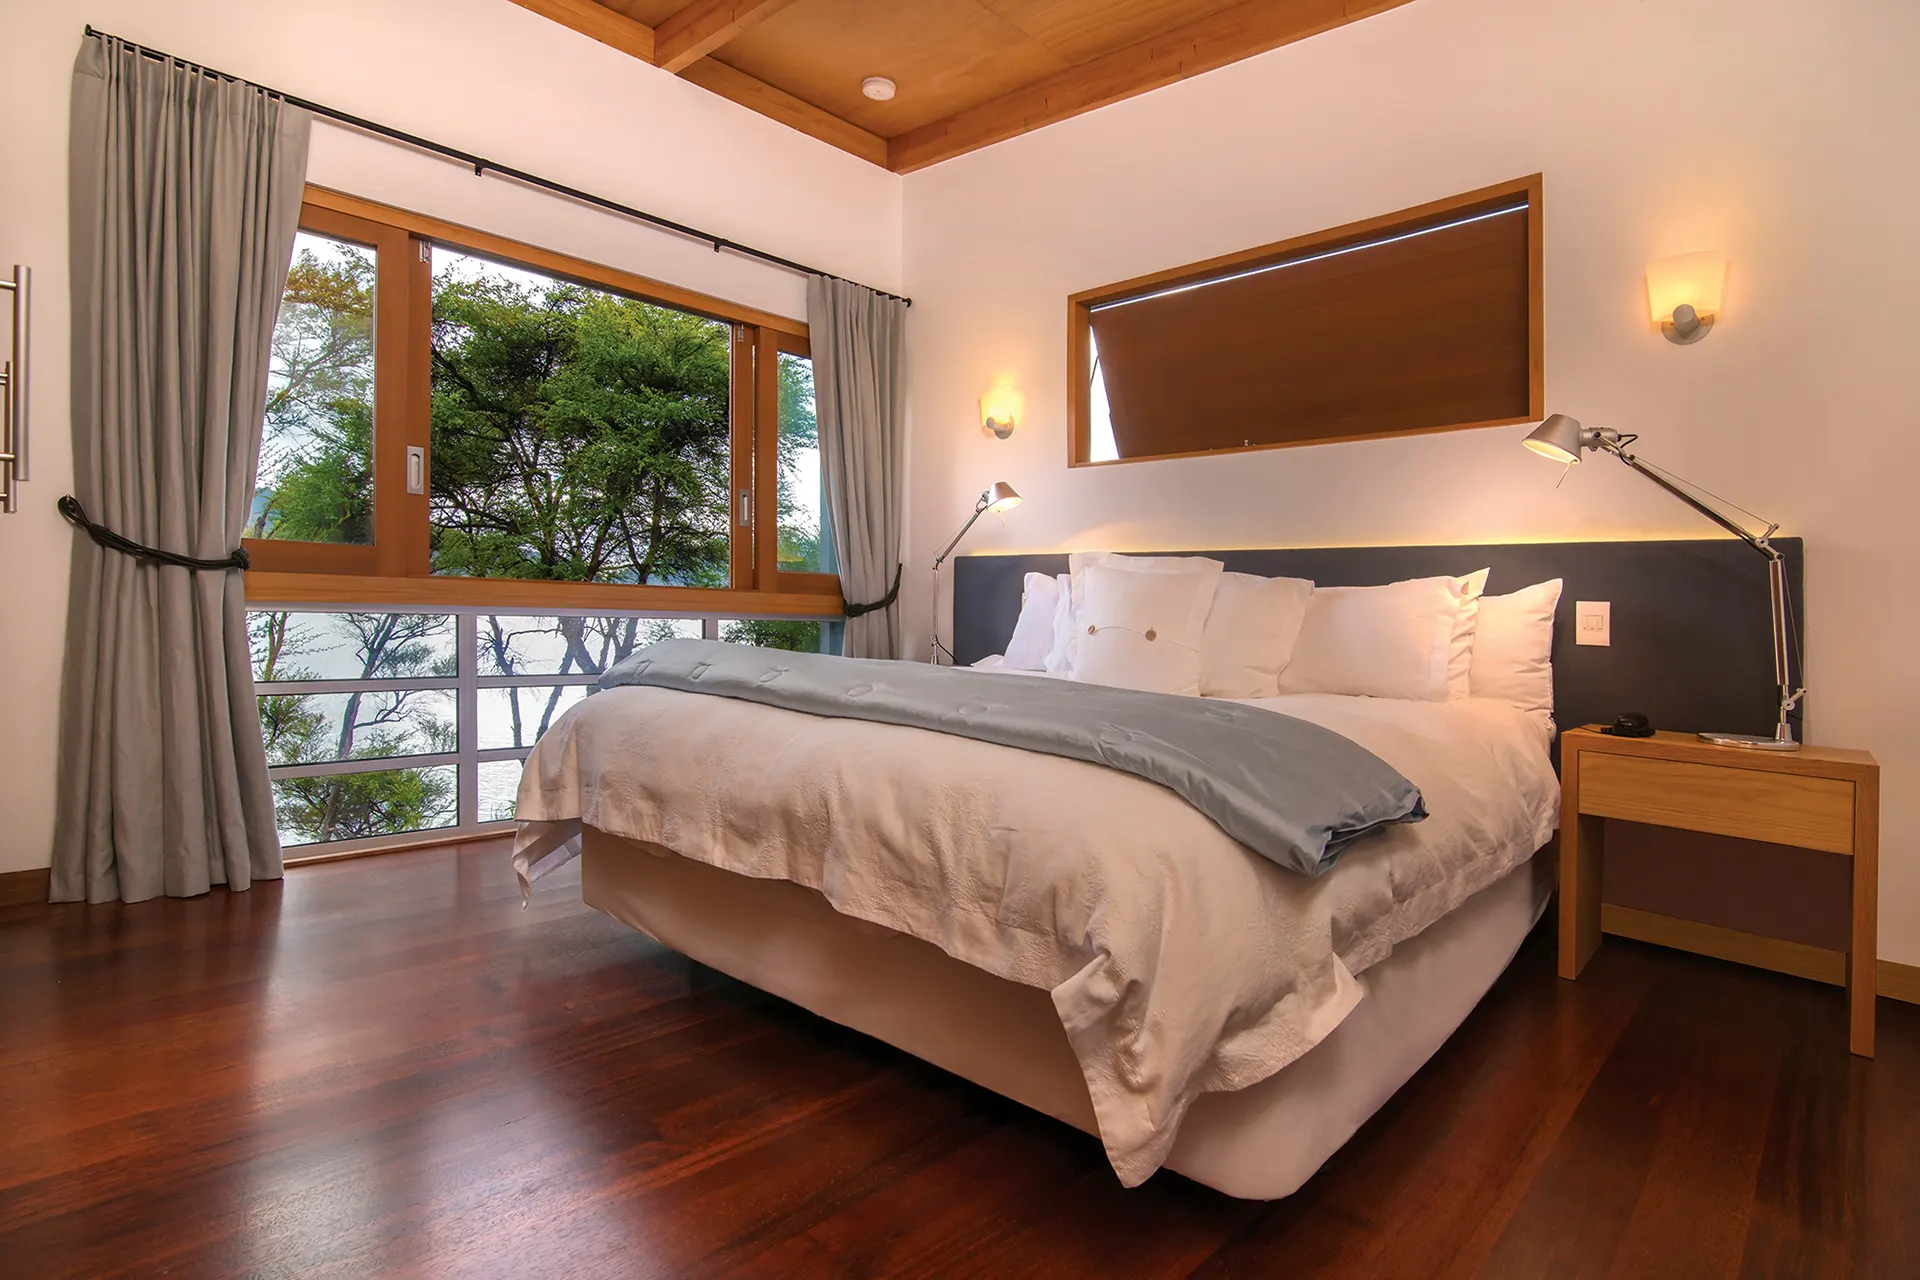 Schlafzimmer in schlichtem Design